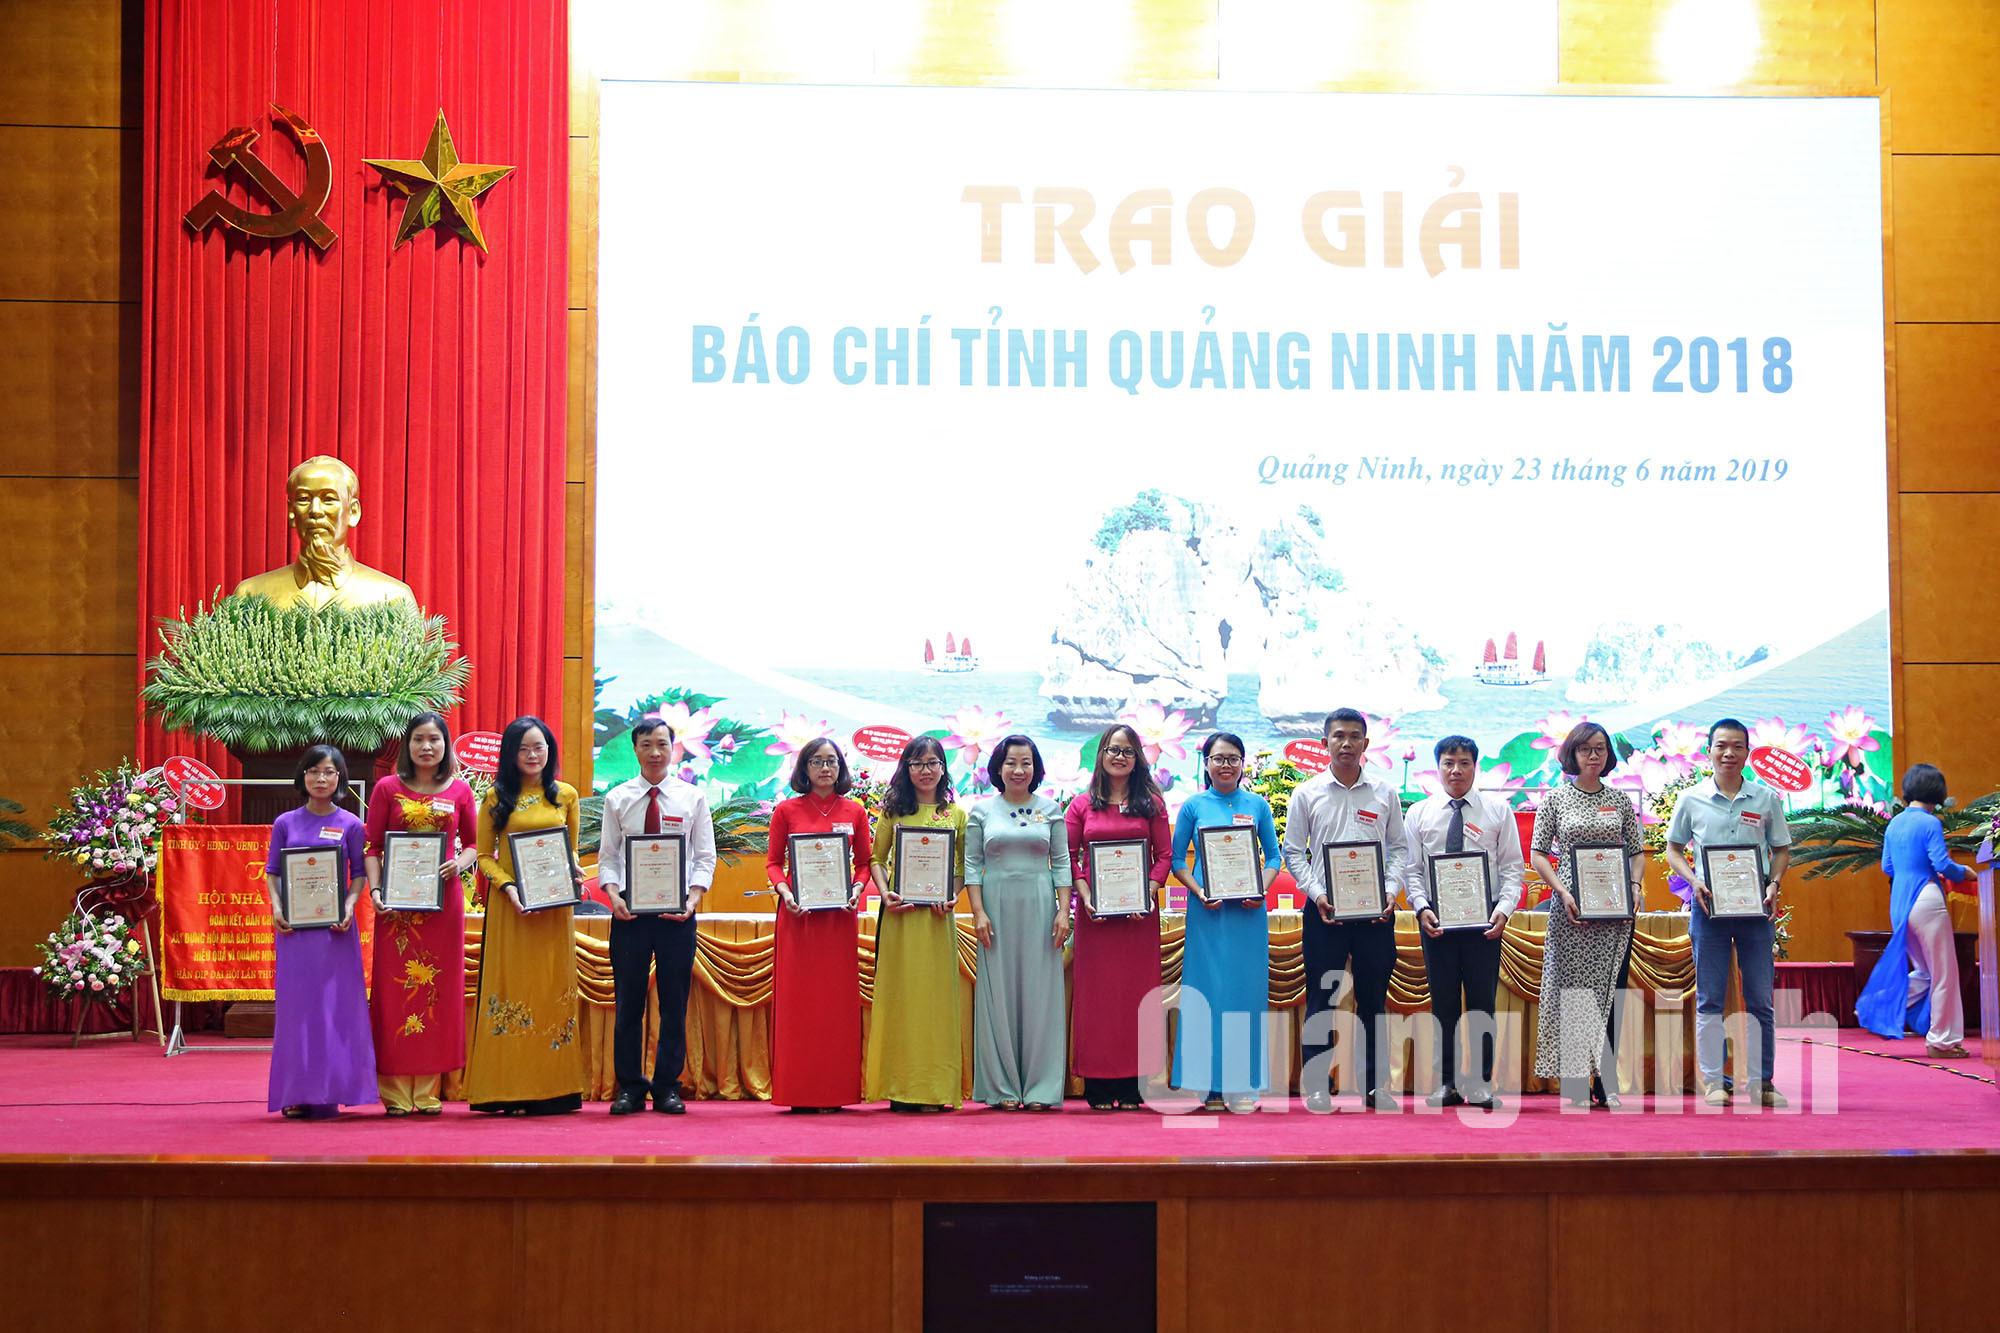 Phó Chủ tịch UBND tỉnh Vũ Thị Thu Thủy trao bằng khen của UBND tỉnh cho các tác giả đoạt giải nhất Giải báo chí tỉnh Quảng Ninh 2018 (6-2019). Ảnh: Hùng Sơn